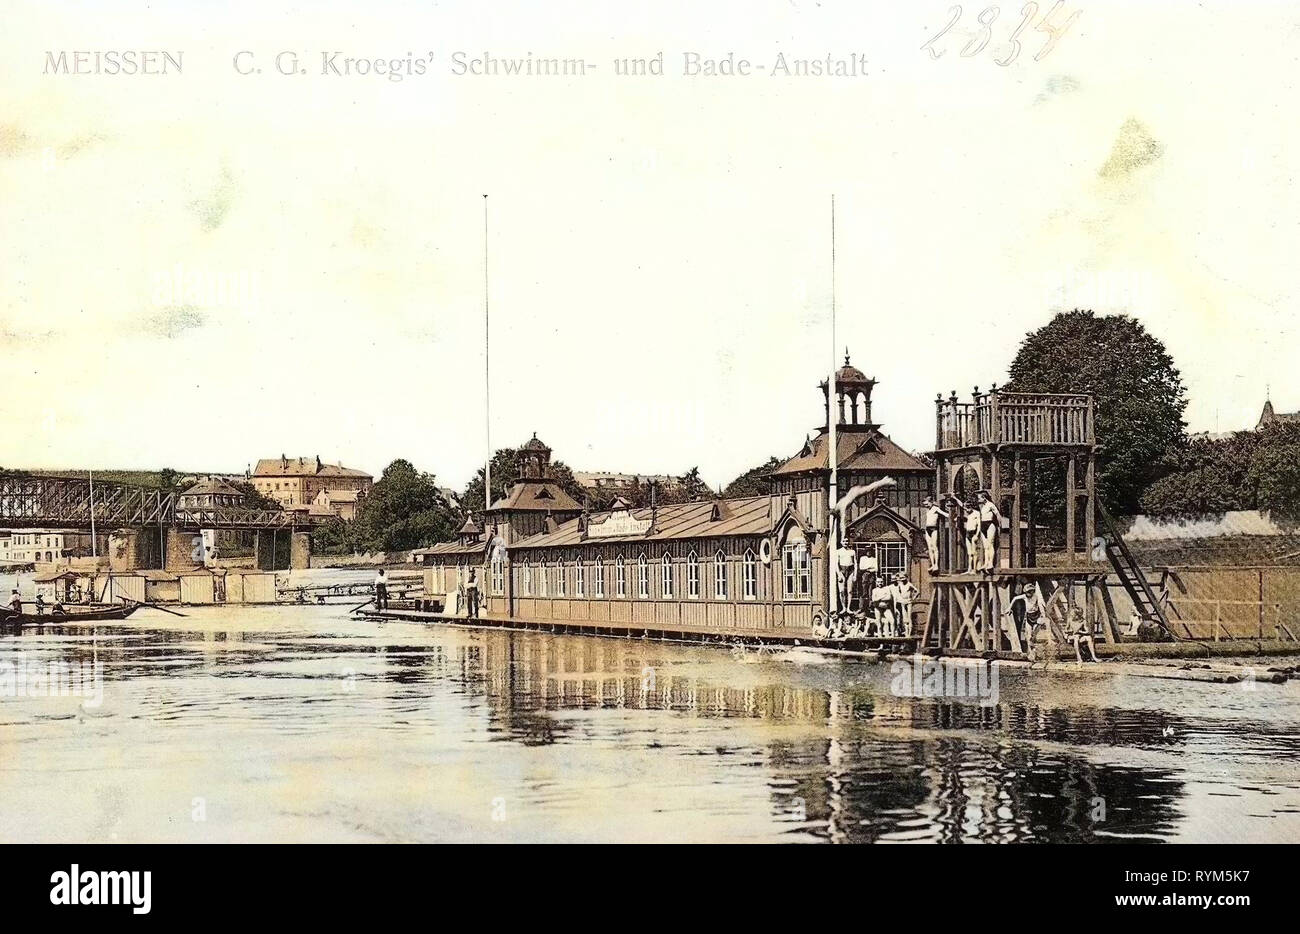 Bagni in Sassonia, piscine in Germania 1903, Meißen, C. G. Kroegis Schwimm, und Badeanstalt Foto Stock